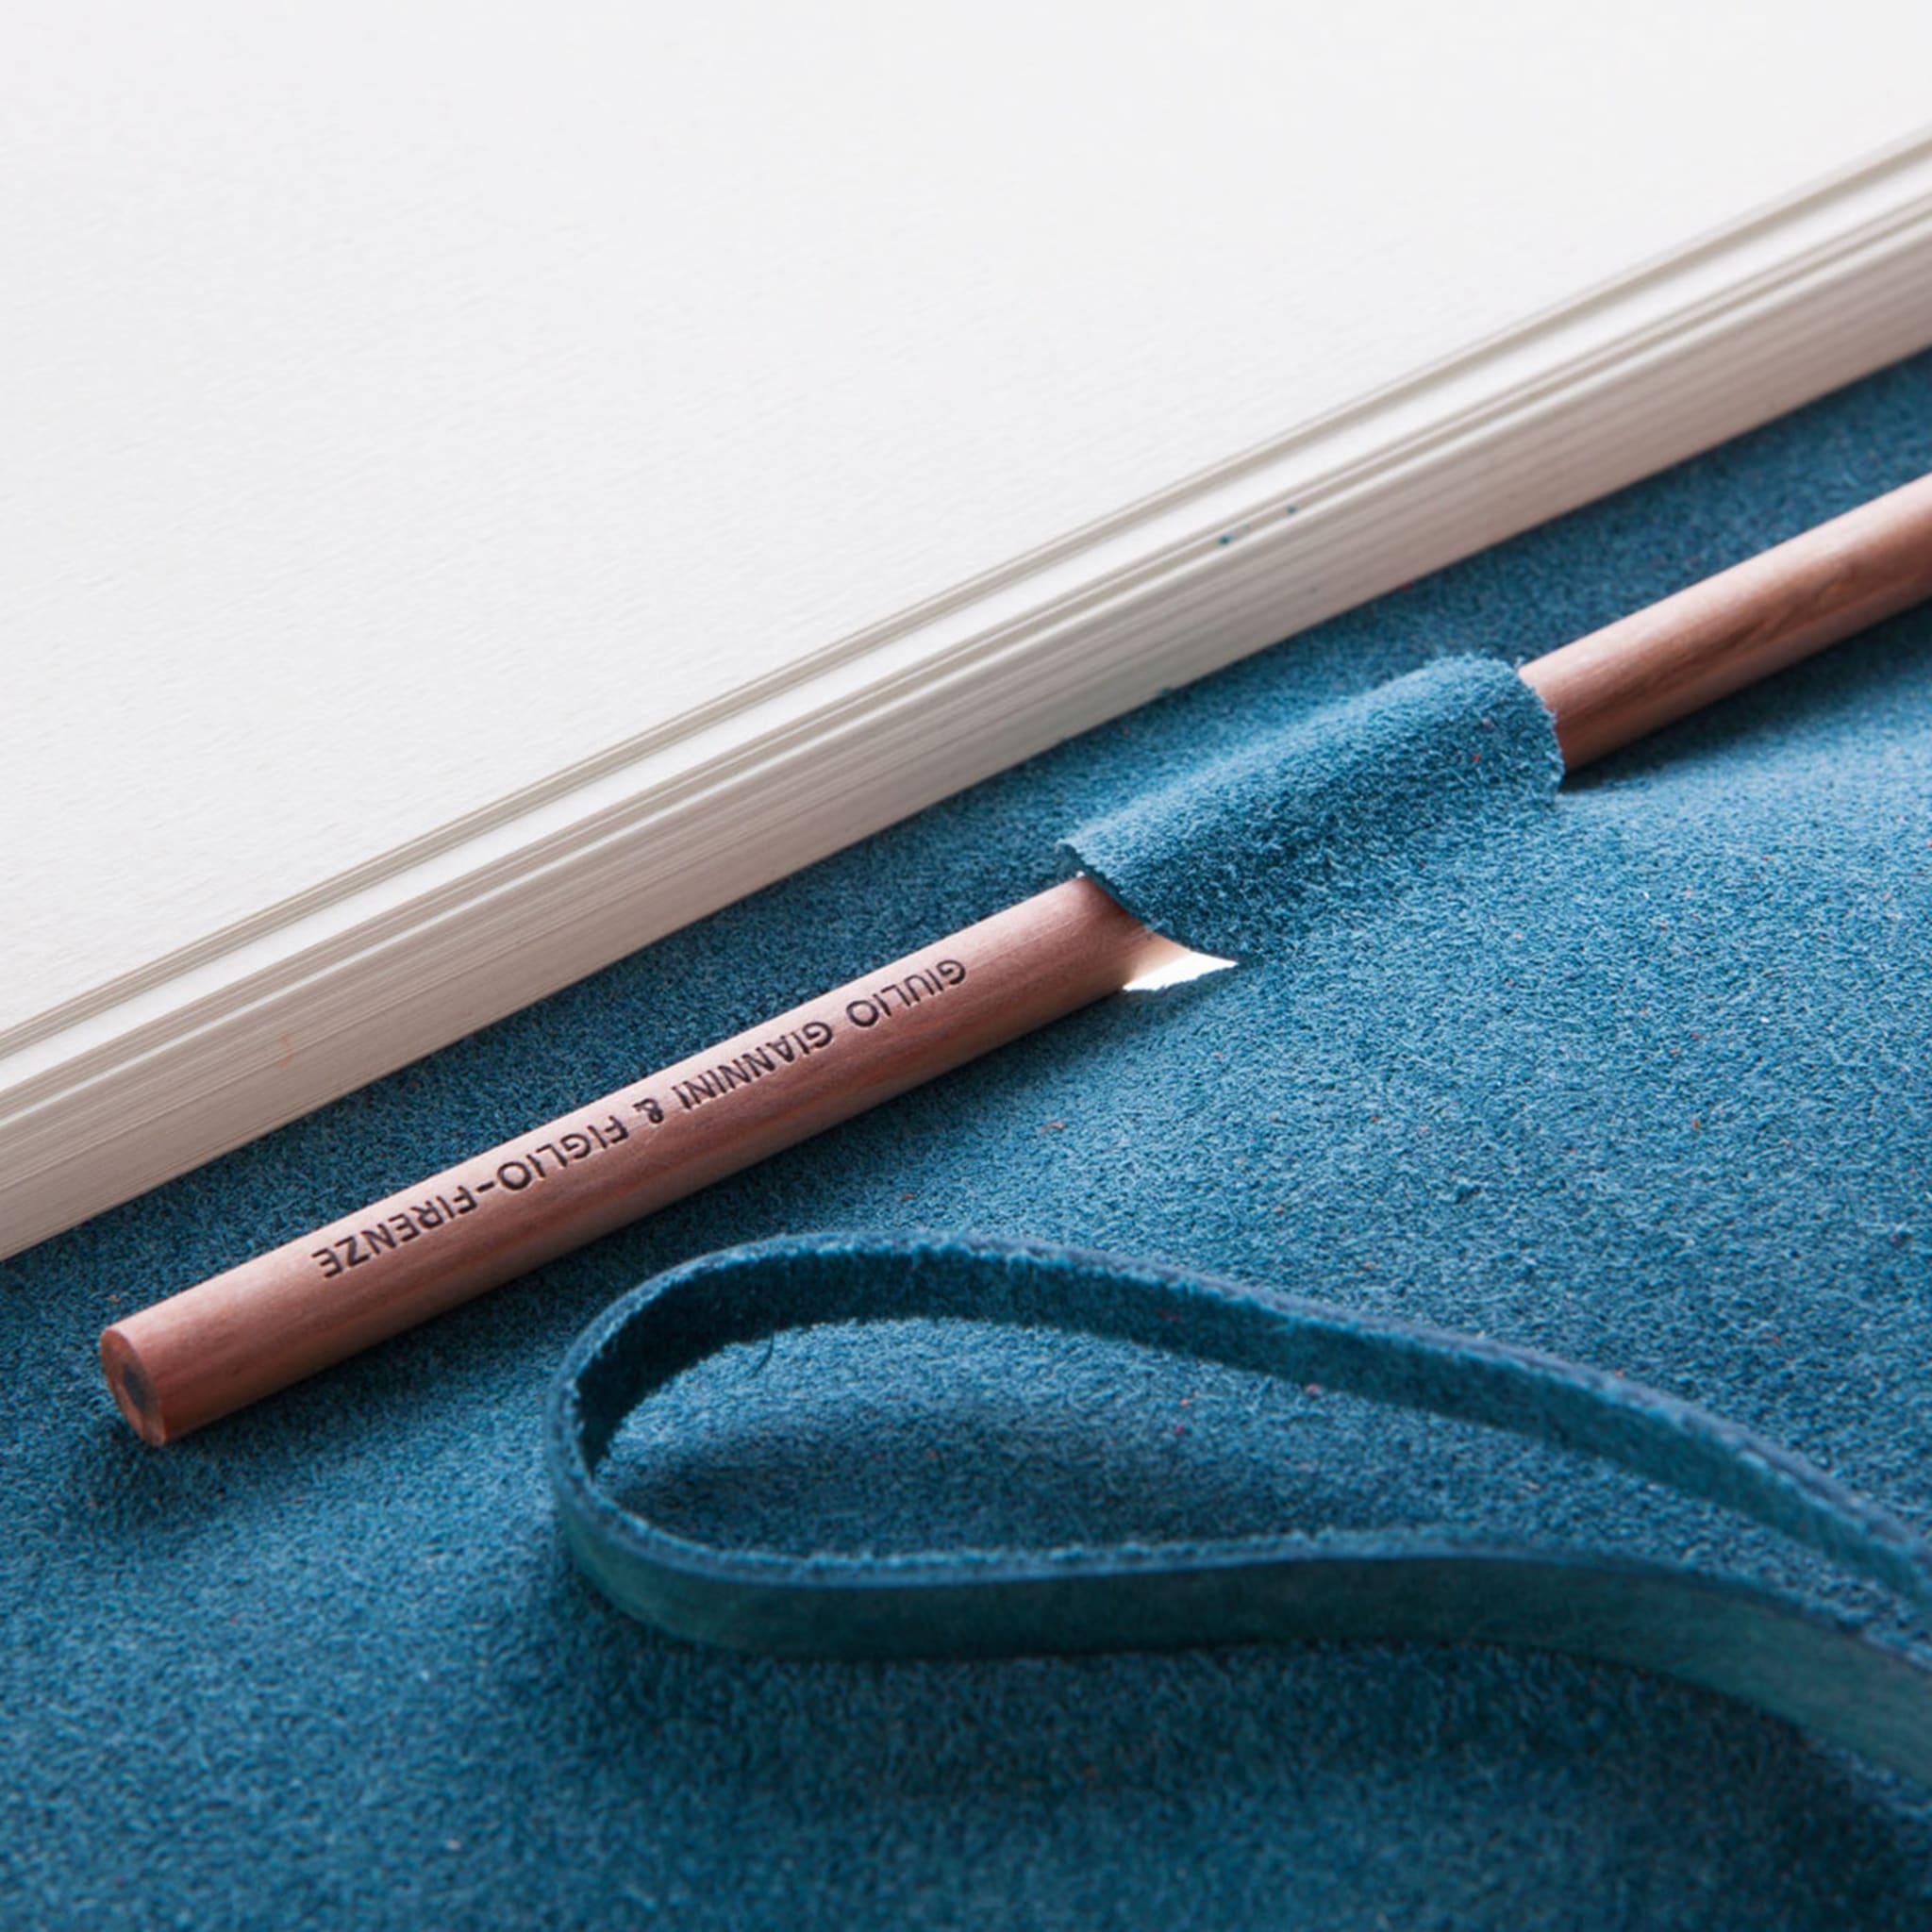 Il s'agit d'un élégant carnet de notes relié dans une teinte débonnaire de cuir bleu par l'atelier de reliure Florentine Giannini. La couverture est fabriquée selon la technique ancienne du tannage végétal, et le papier parchemin ivoire uni à